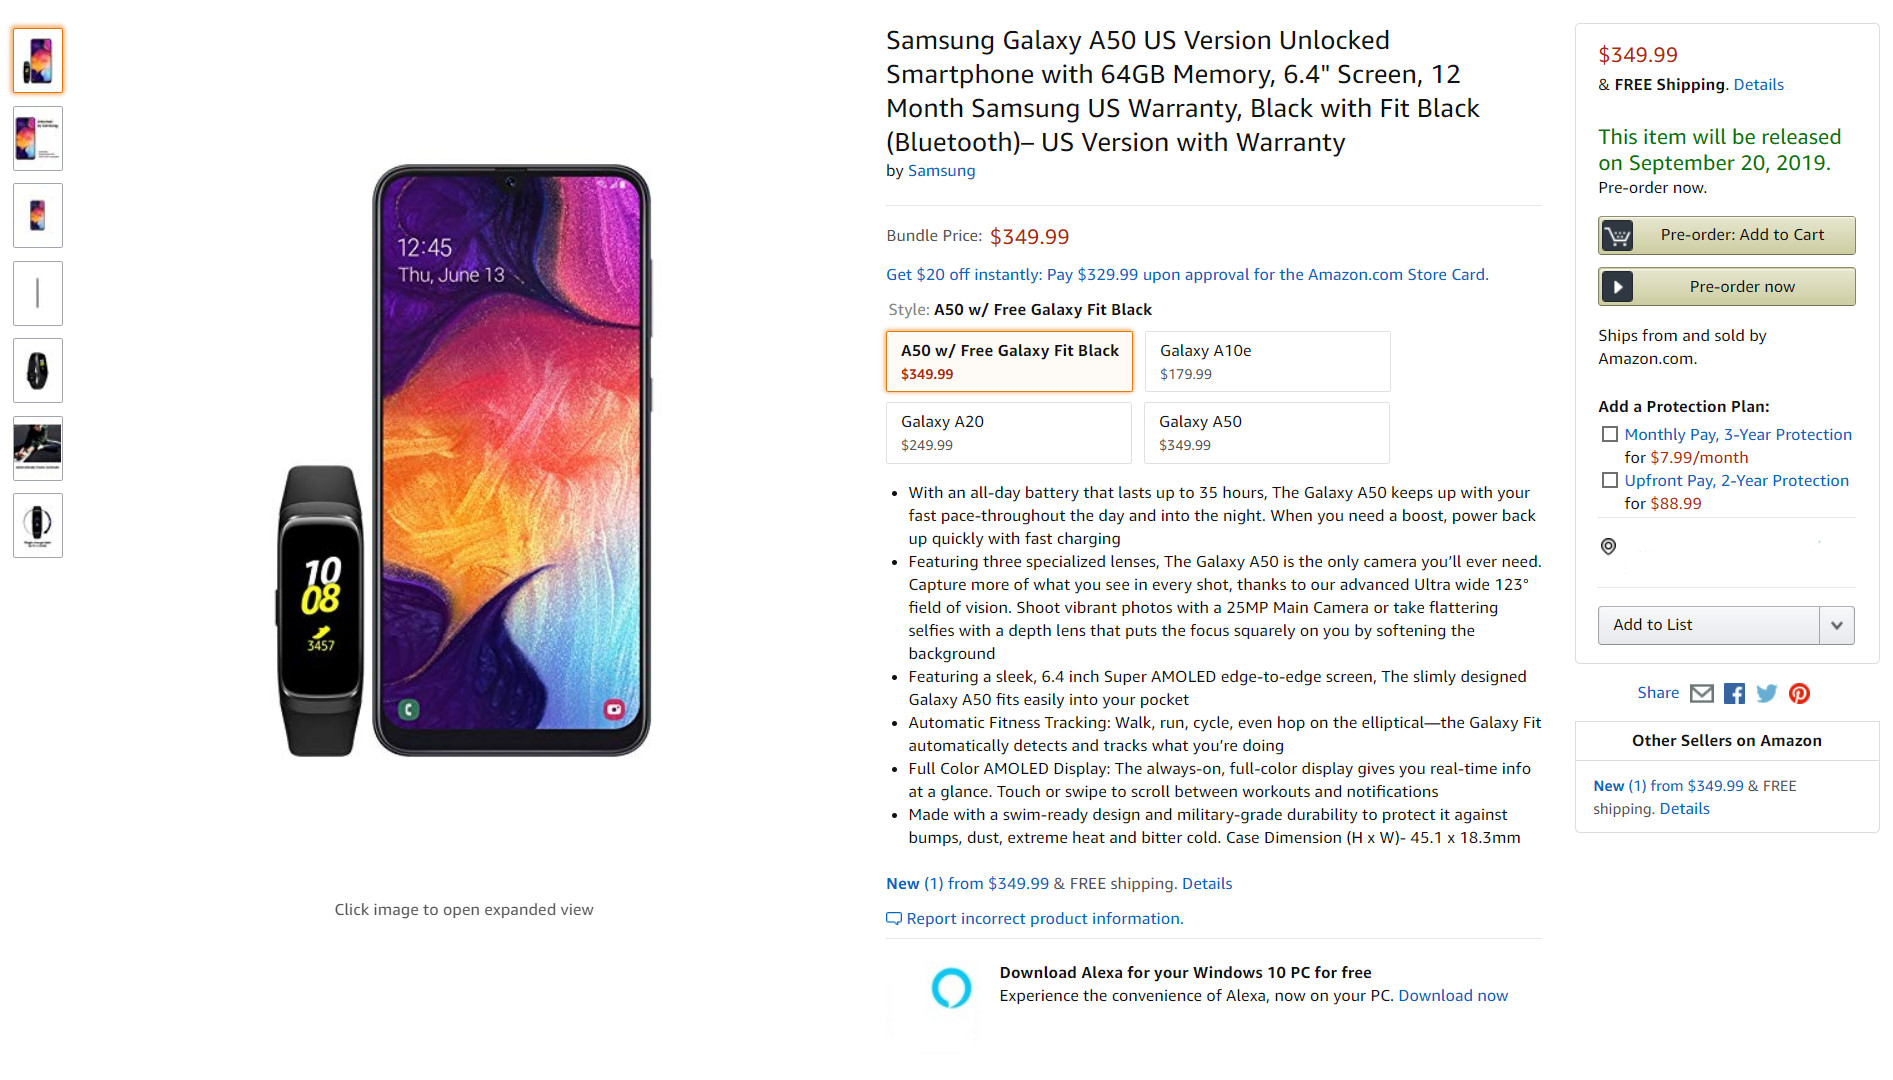 The Samsung Galaxy A50 Amazon listing.